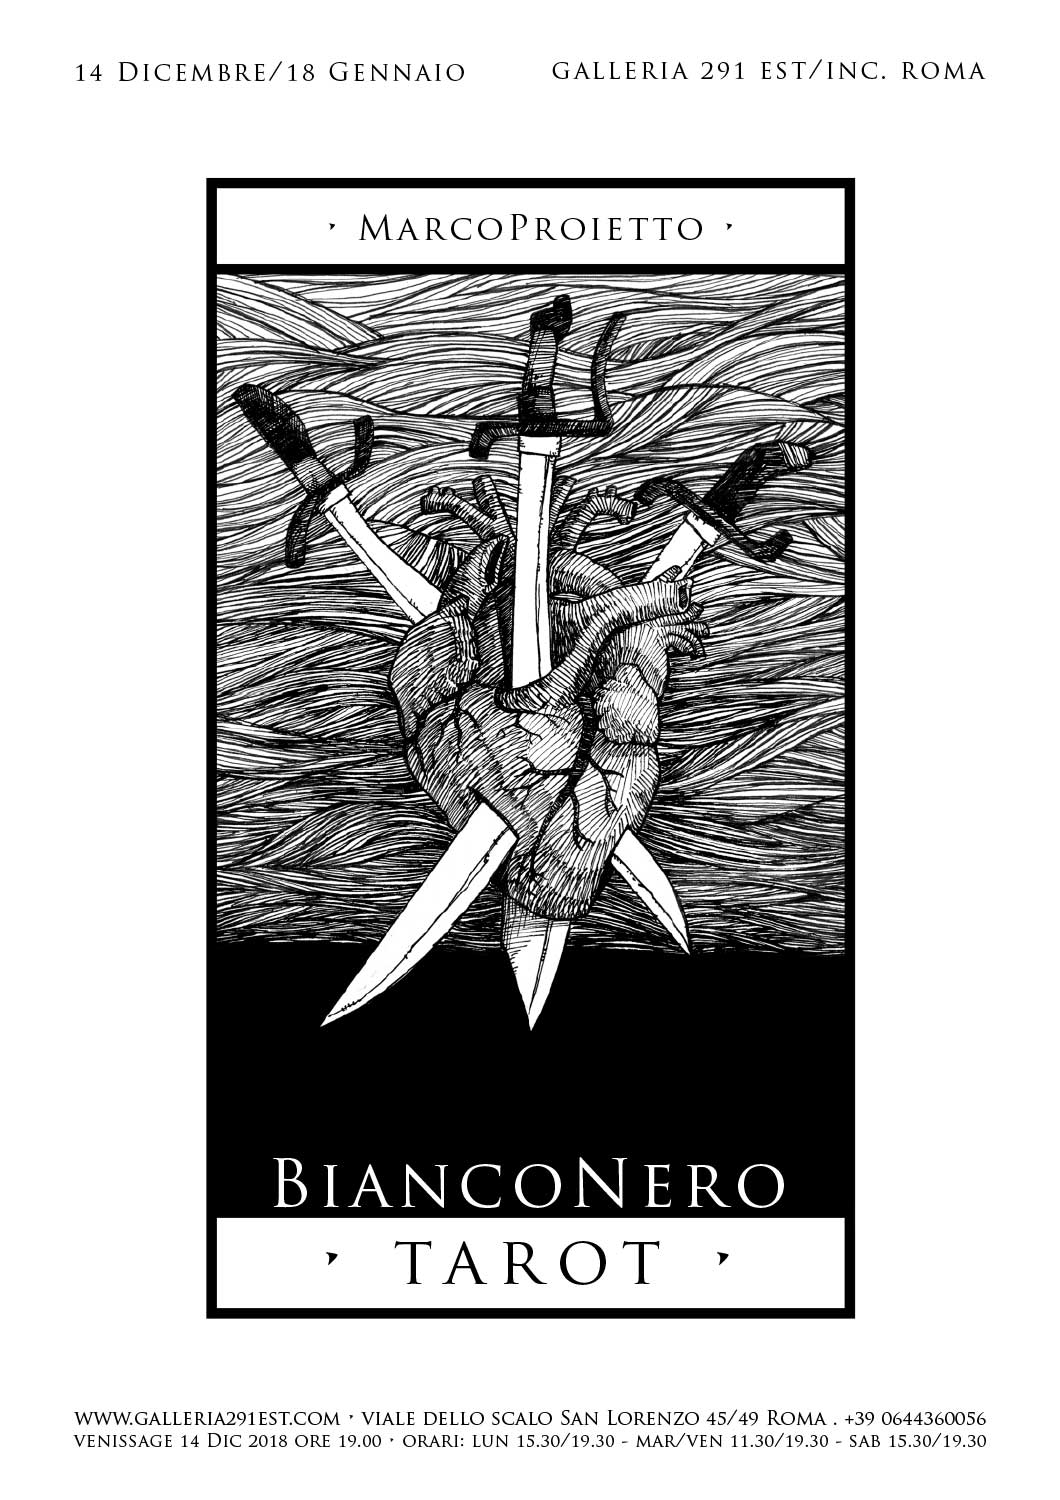 BiancoNero tarot - Marco Proietto presso Galleria 291 Est/INC